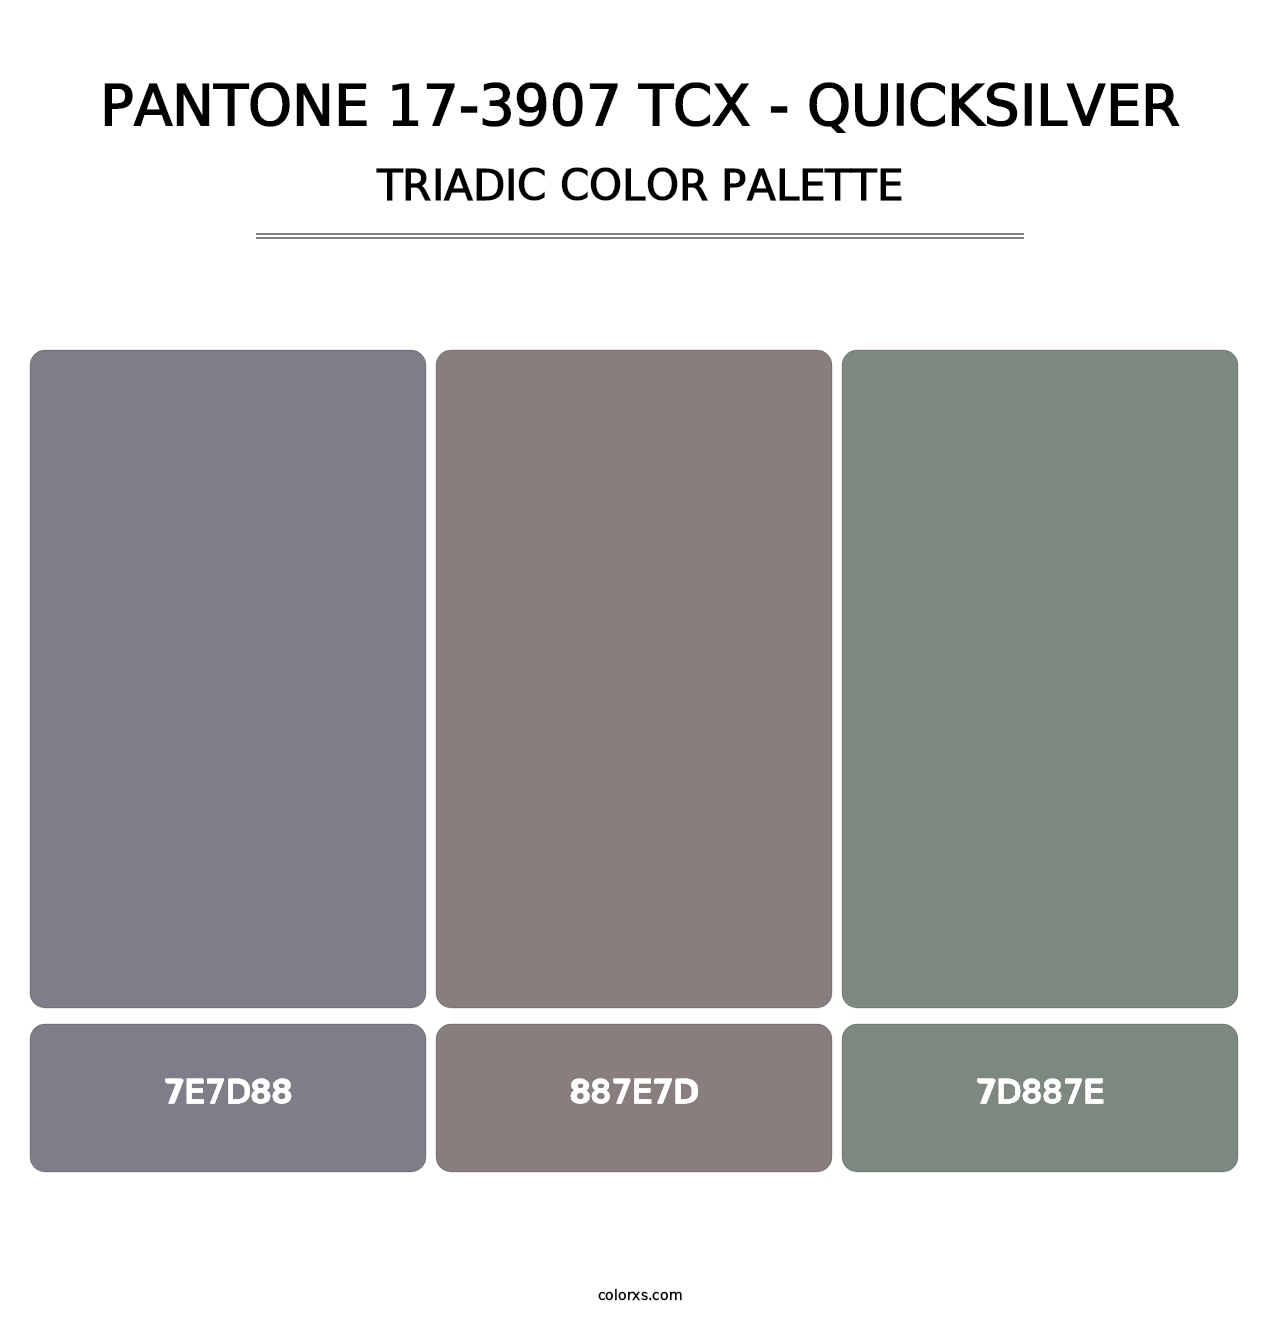 PANTONE 17-3907 TCX - Quicksilver - Triadic Color Palette